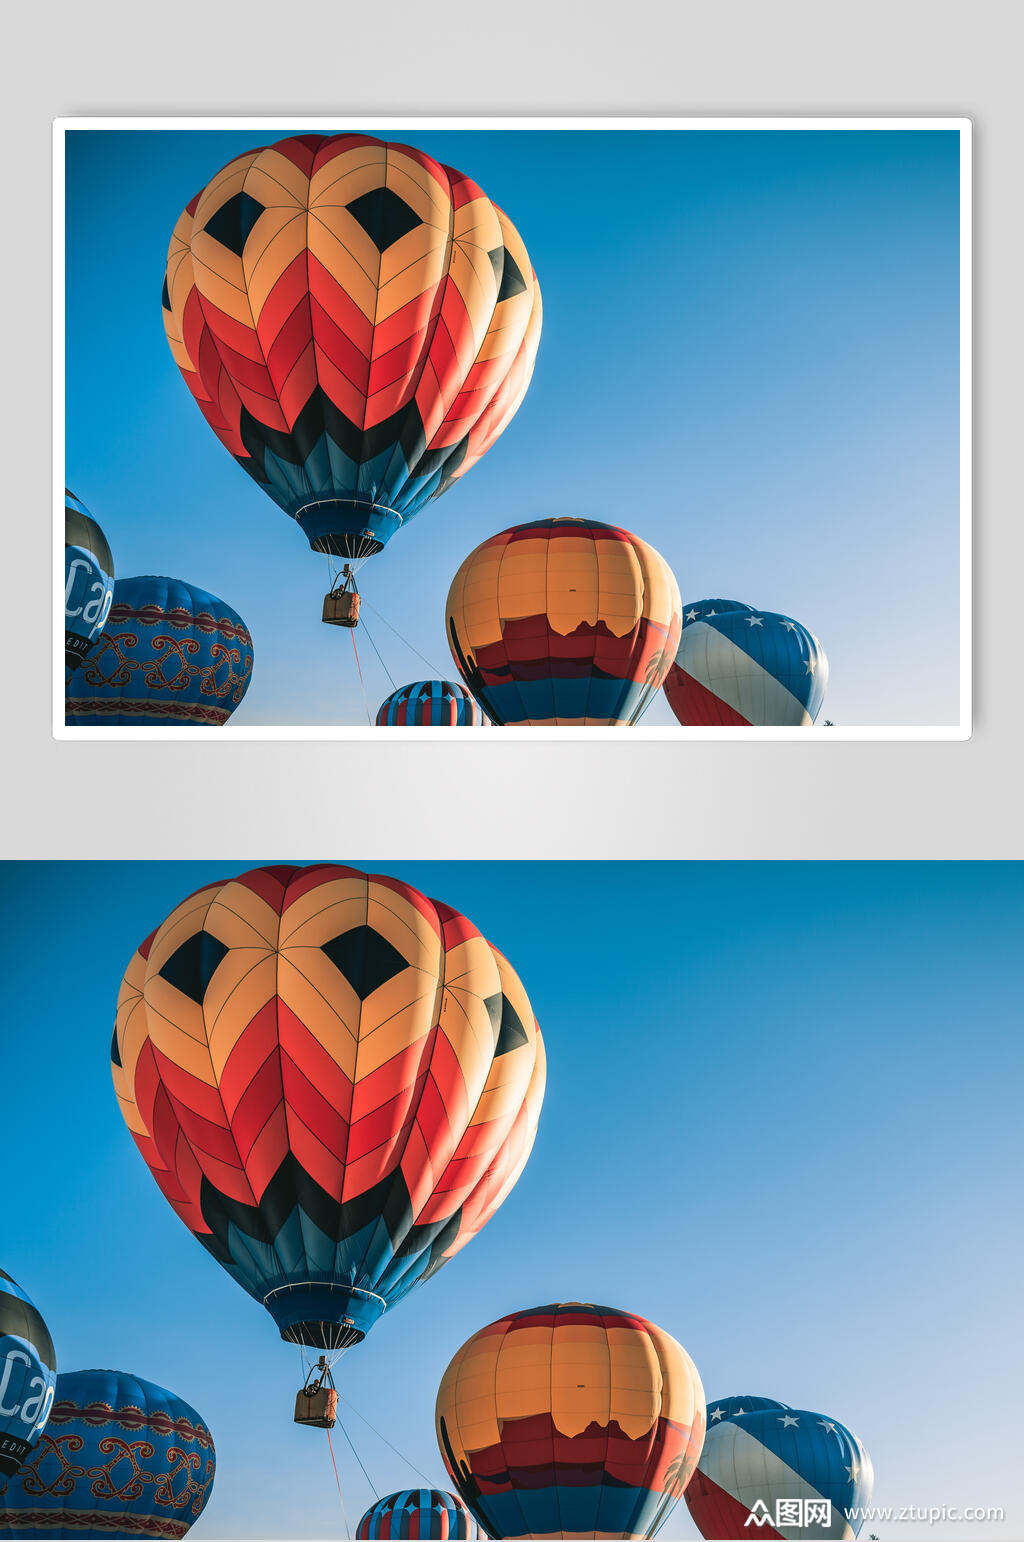 蓝天热气球风景图片素材